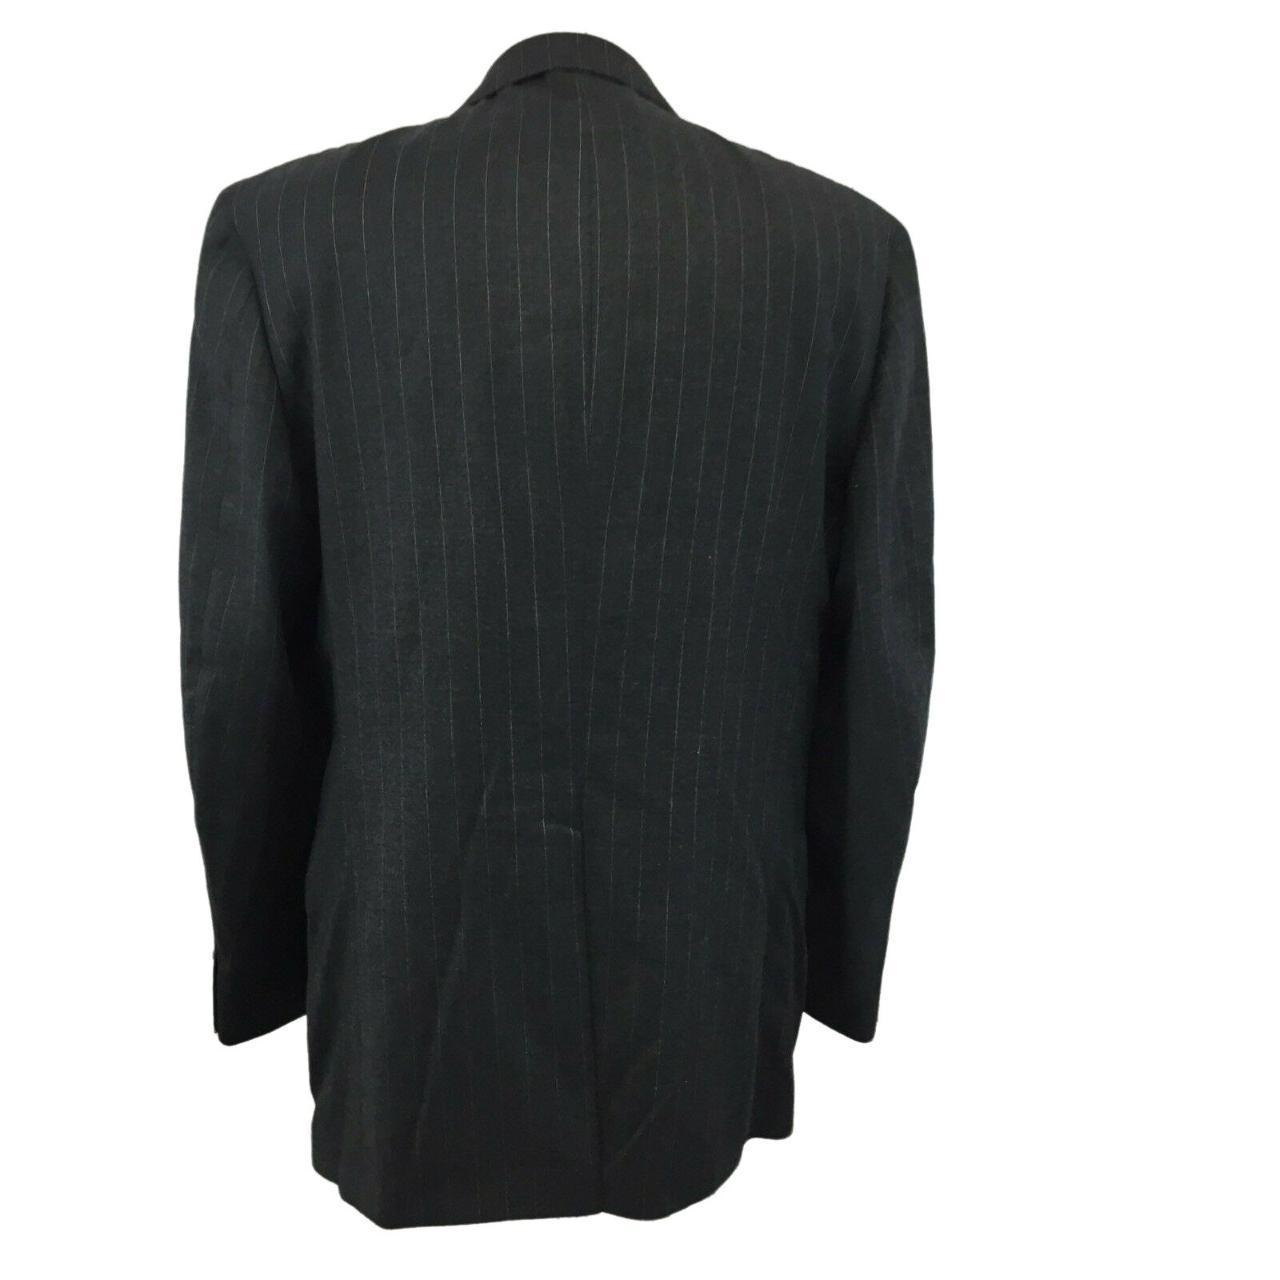 Henry Grethel Suit Jacket Blazer Sports Coat Mens... - Depop